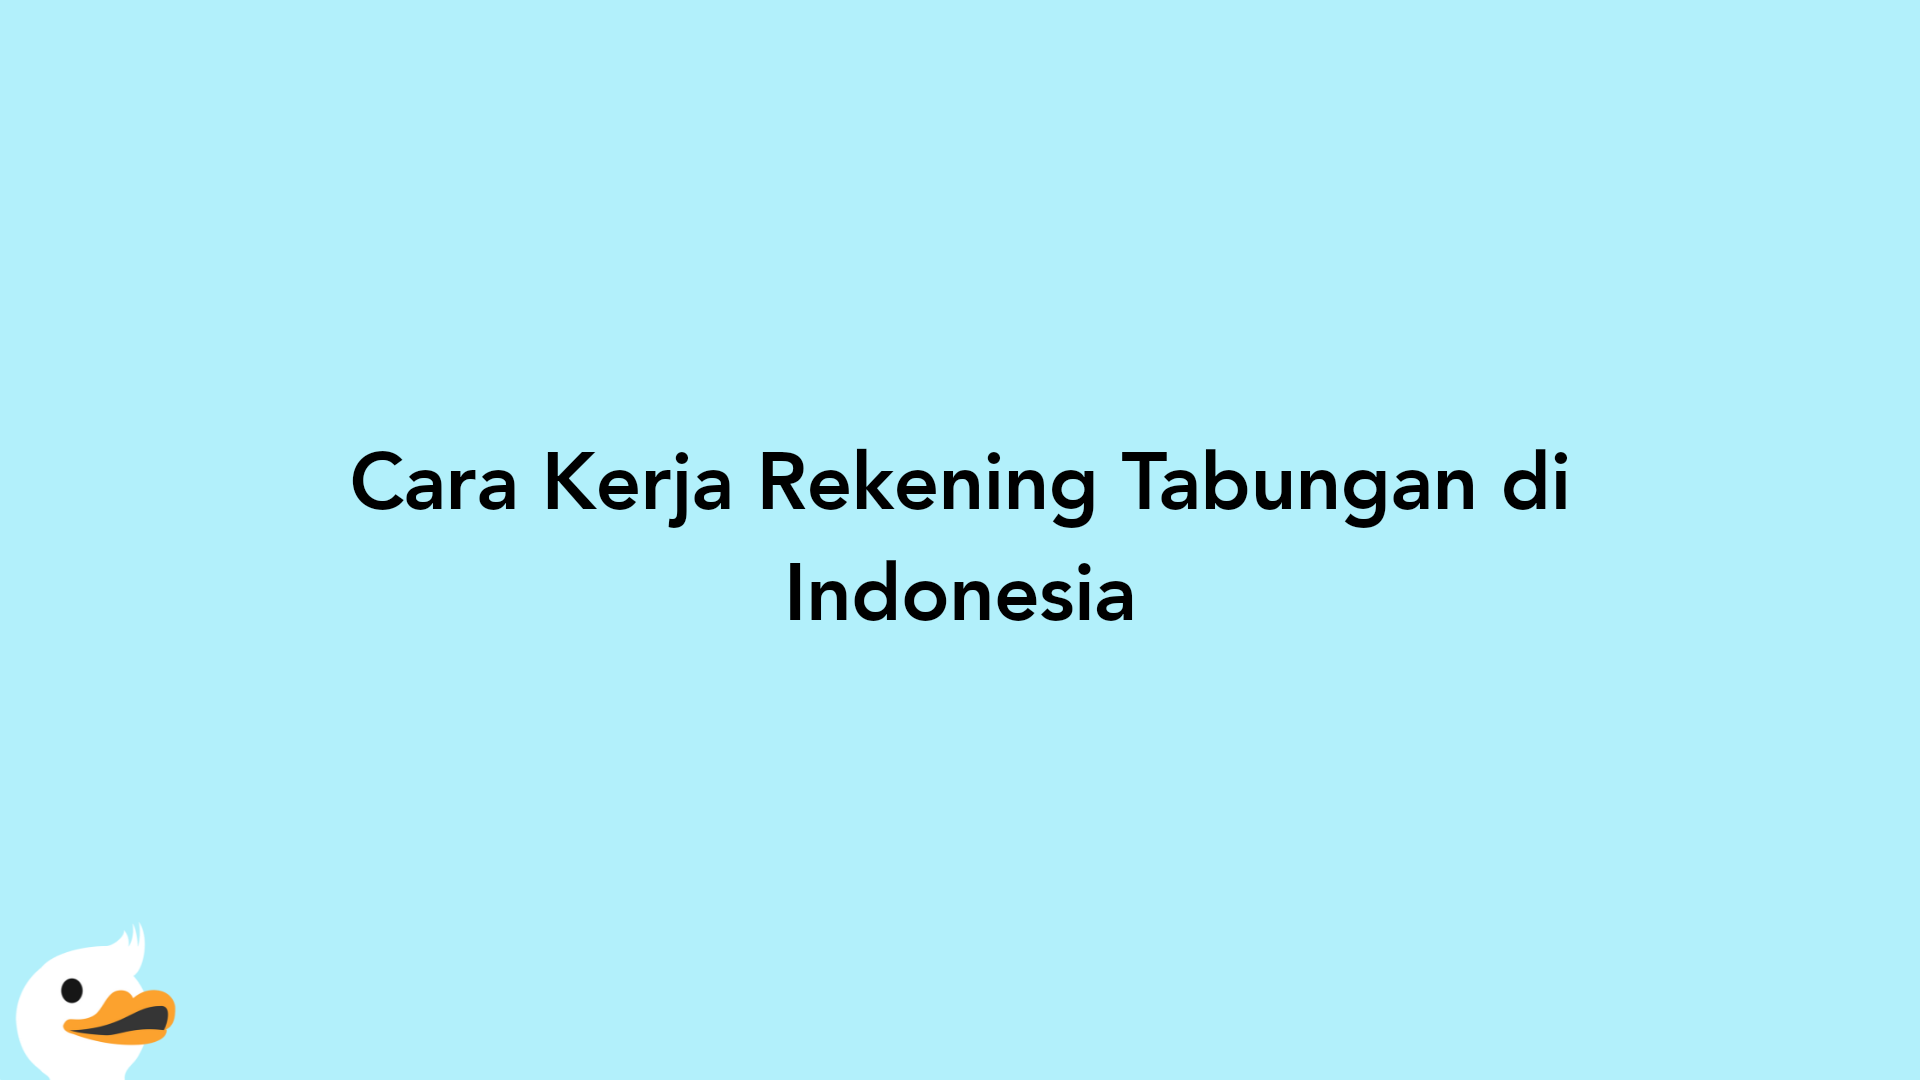 Cara Kerja Rekening Tabungan di Indonesia